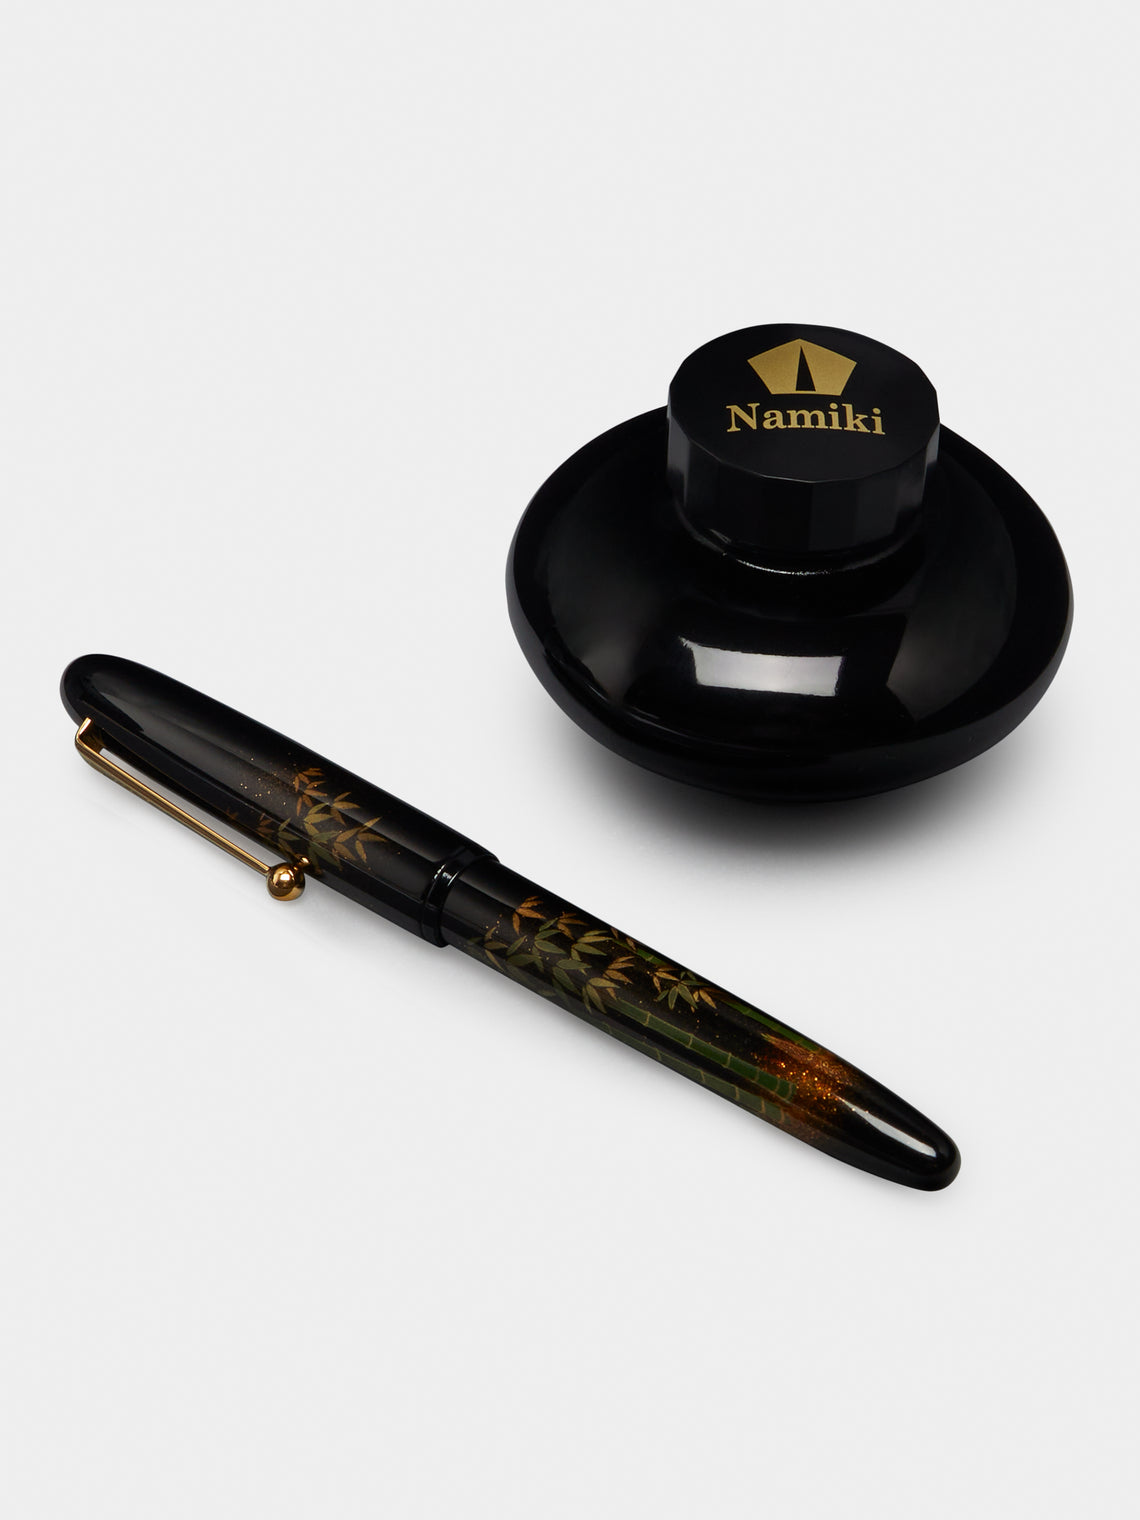 Namiki - Yukari "Bamboo" Rollerball Pen - Black - ABASK